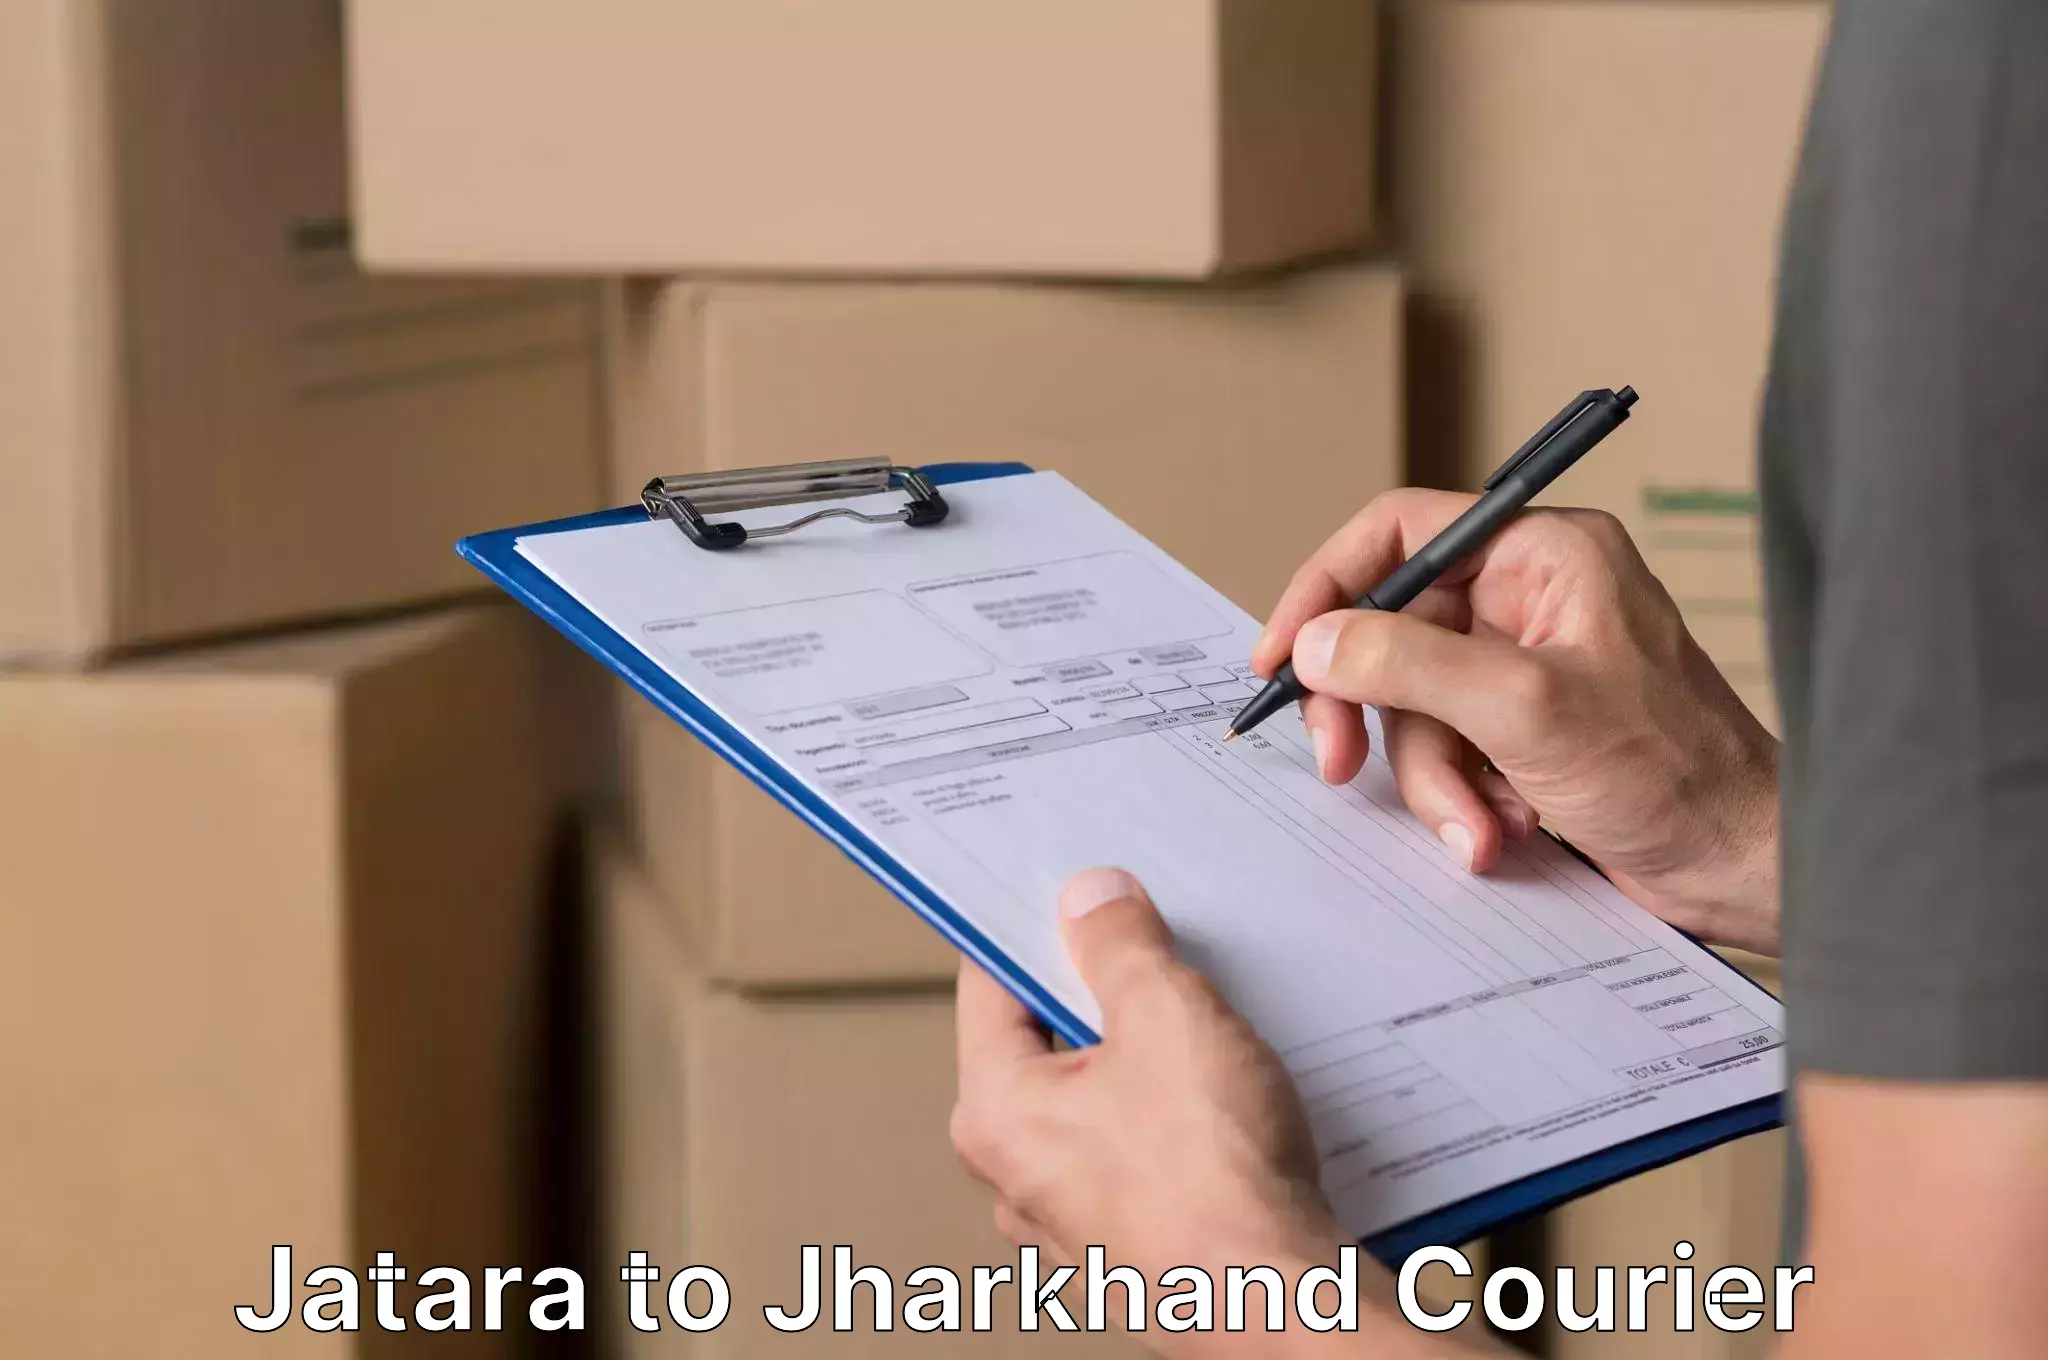 Quality moving company Jatara to Kedla